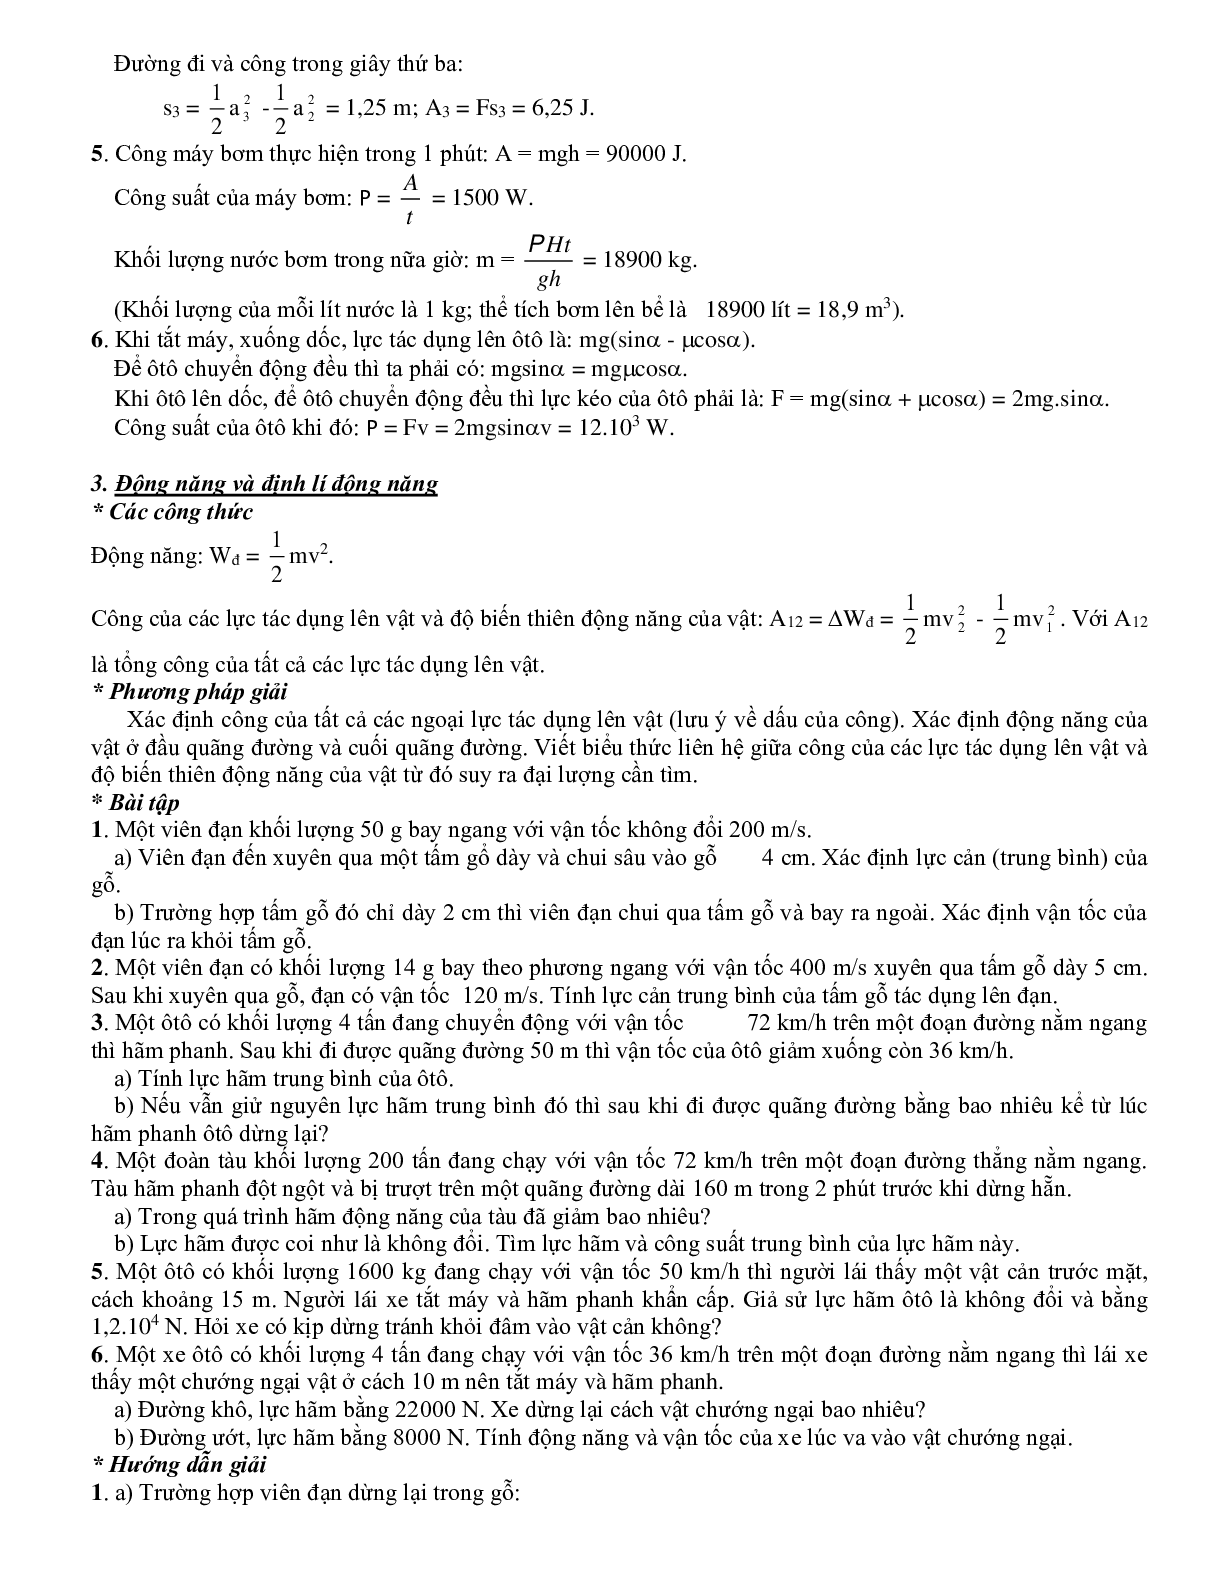 Chuyên đề Các định luật bảo toàn môn Vật lý lớp 10 (trang 5)